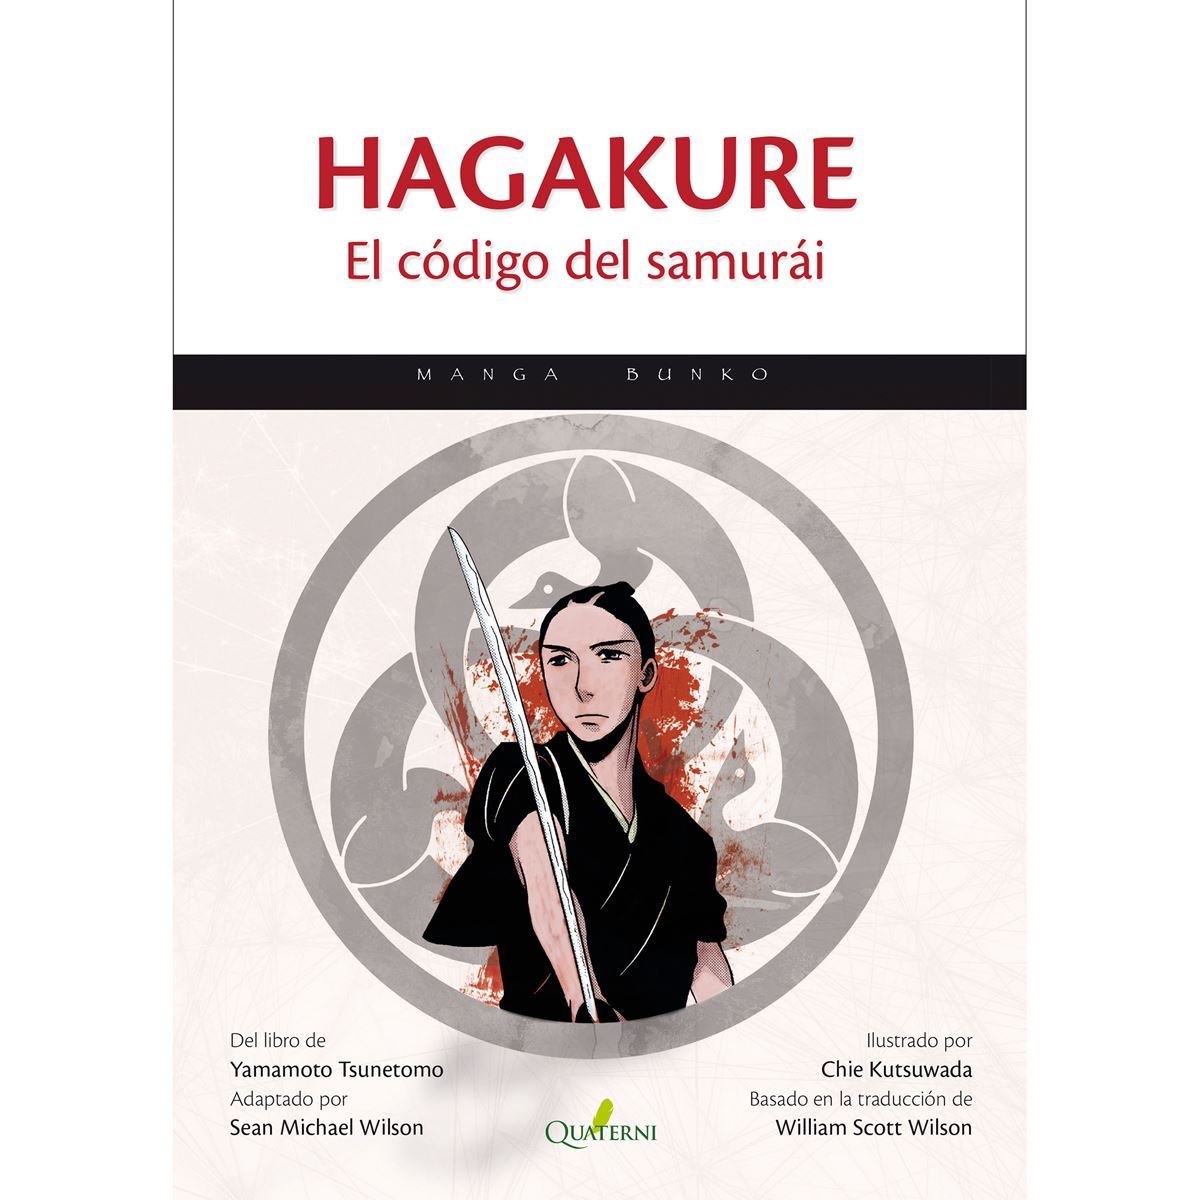 Hagakure El Código del Samurái